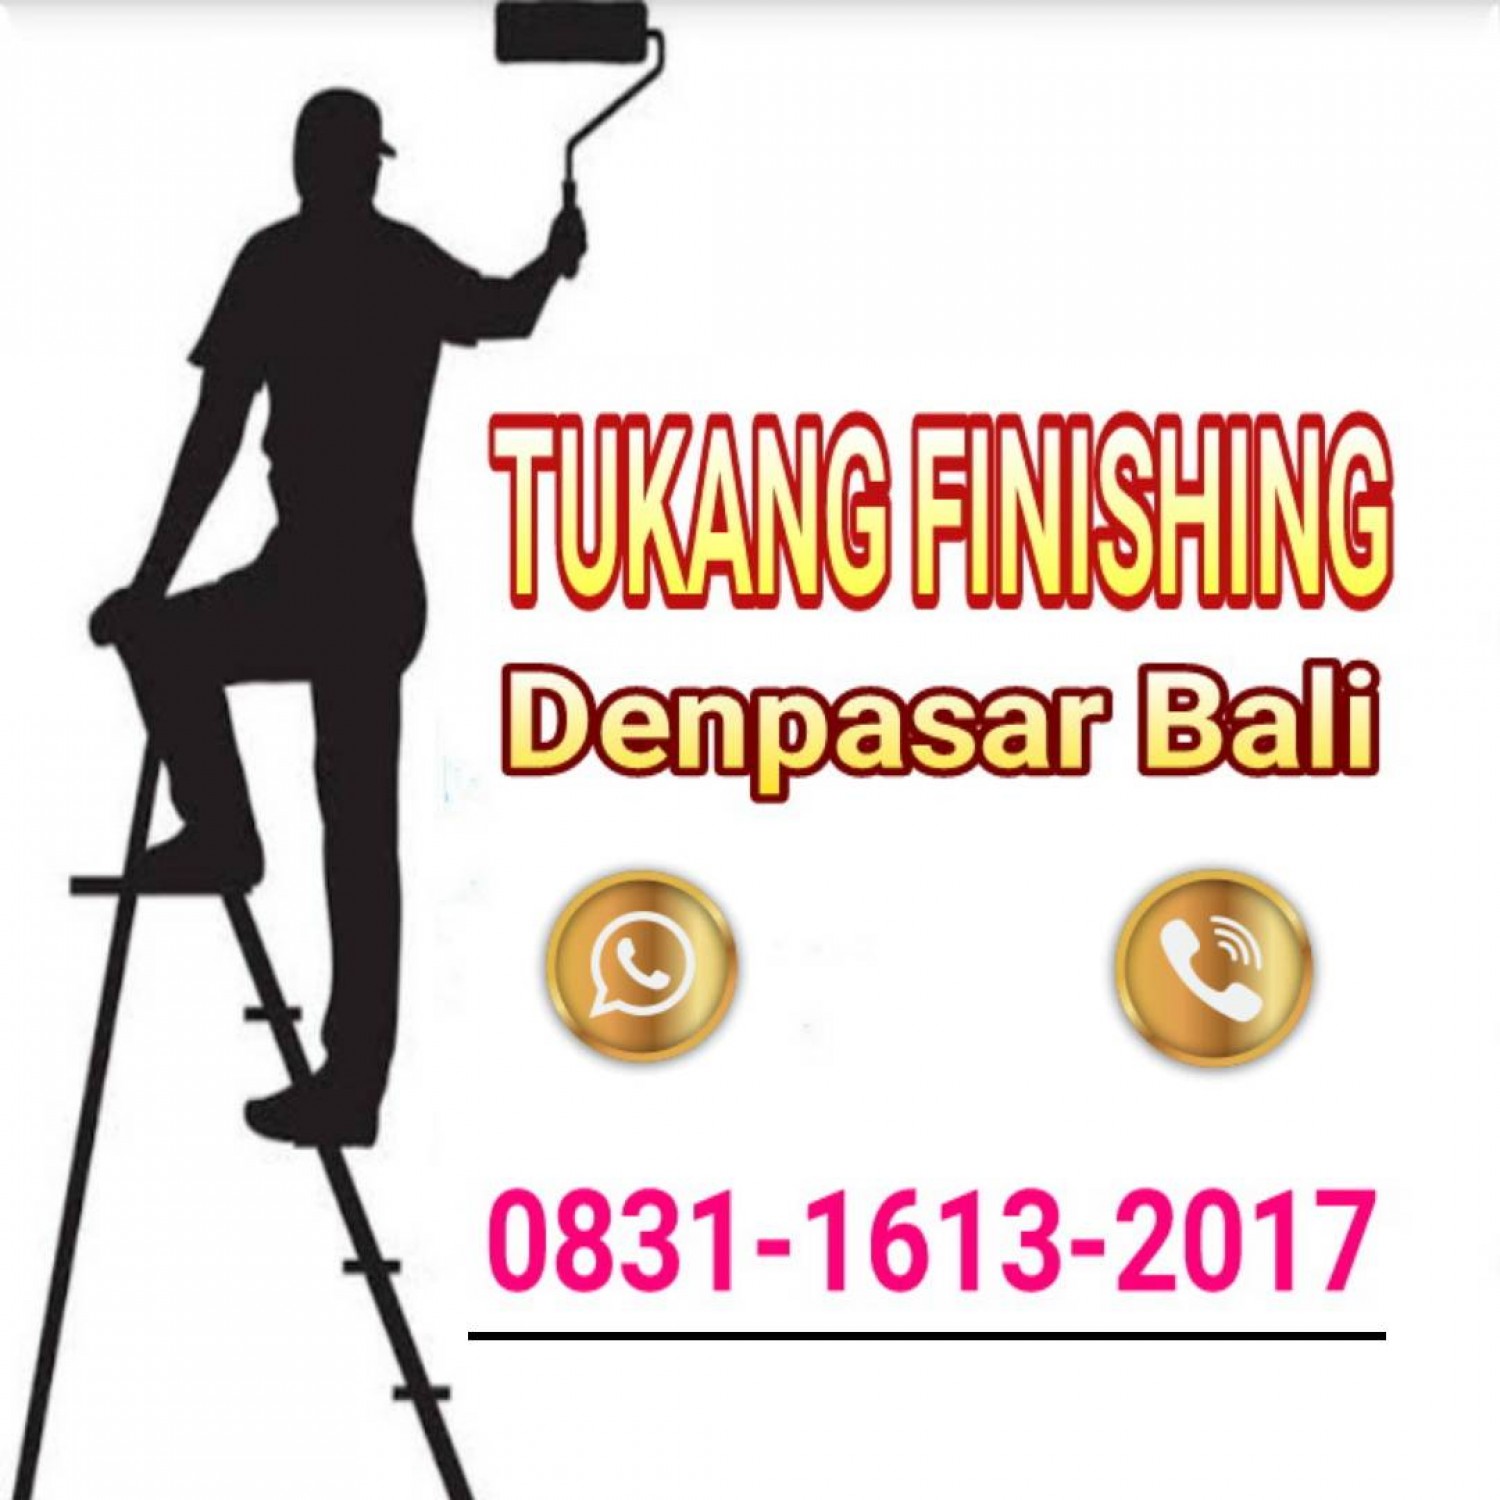 Tukang Finishing Denpasar,Bali